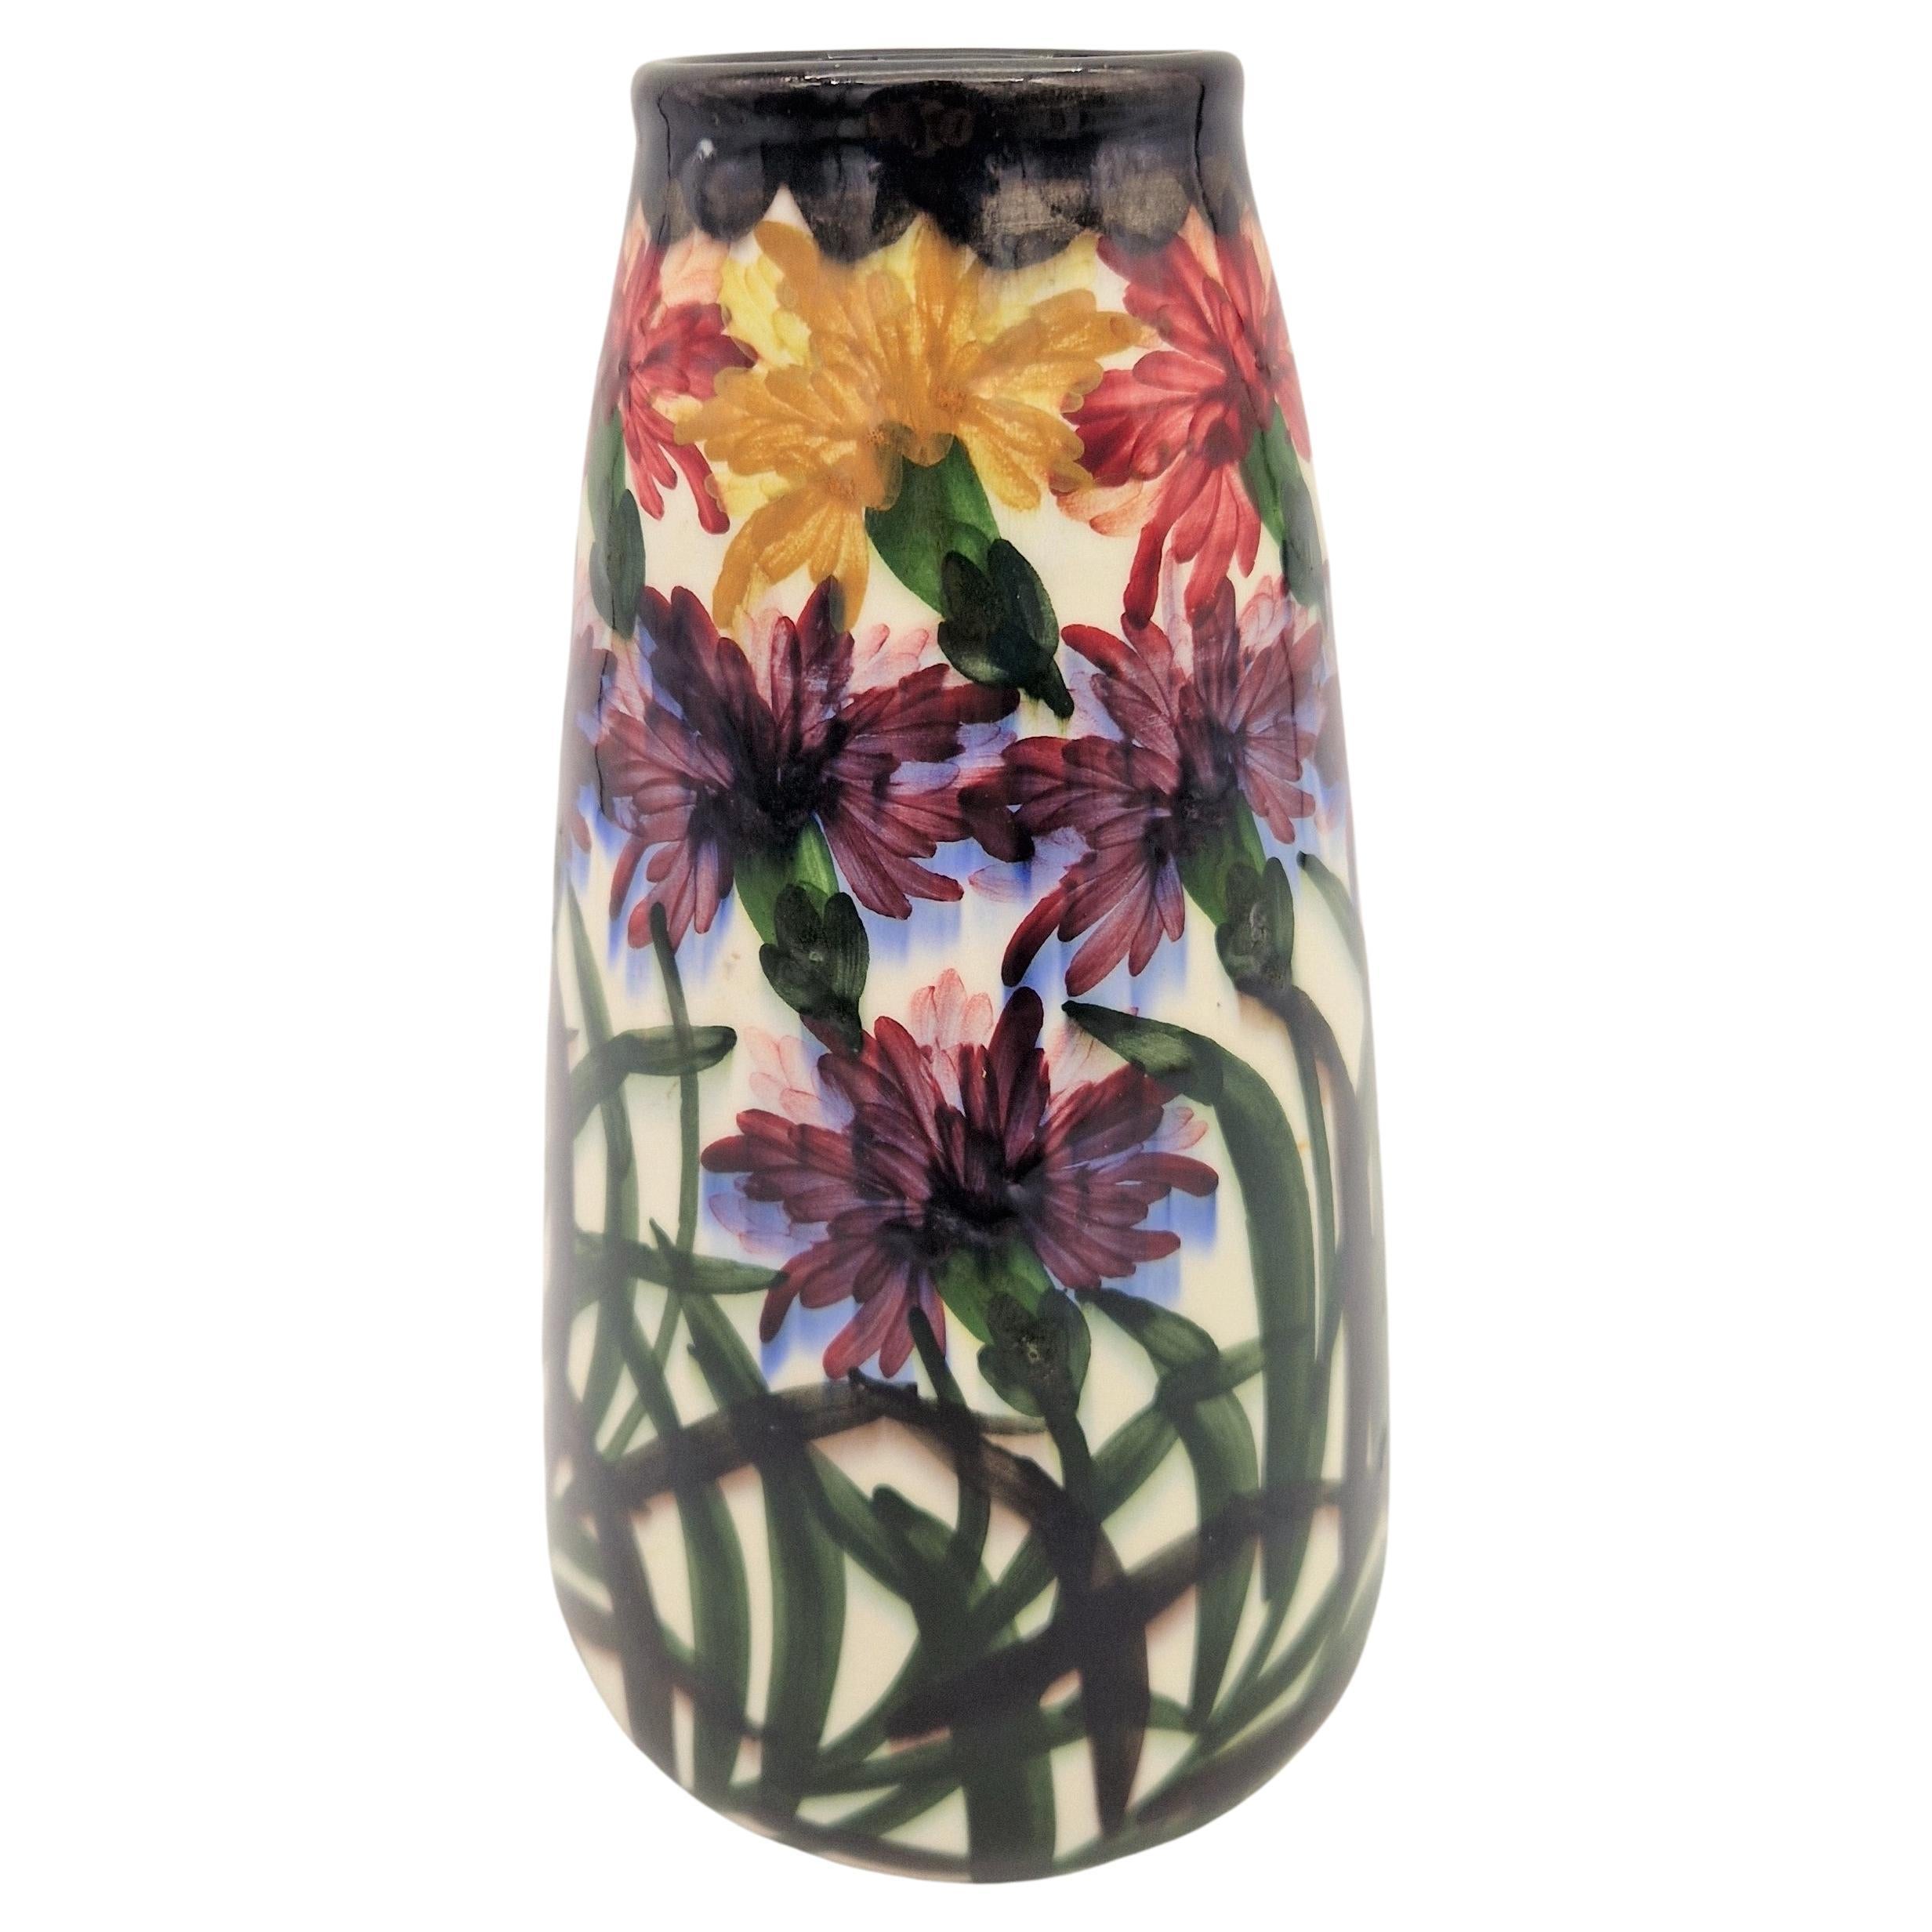 Vase en céramique Art nouveau de Schramberg, 1900 - 1920